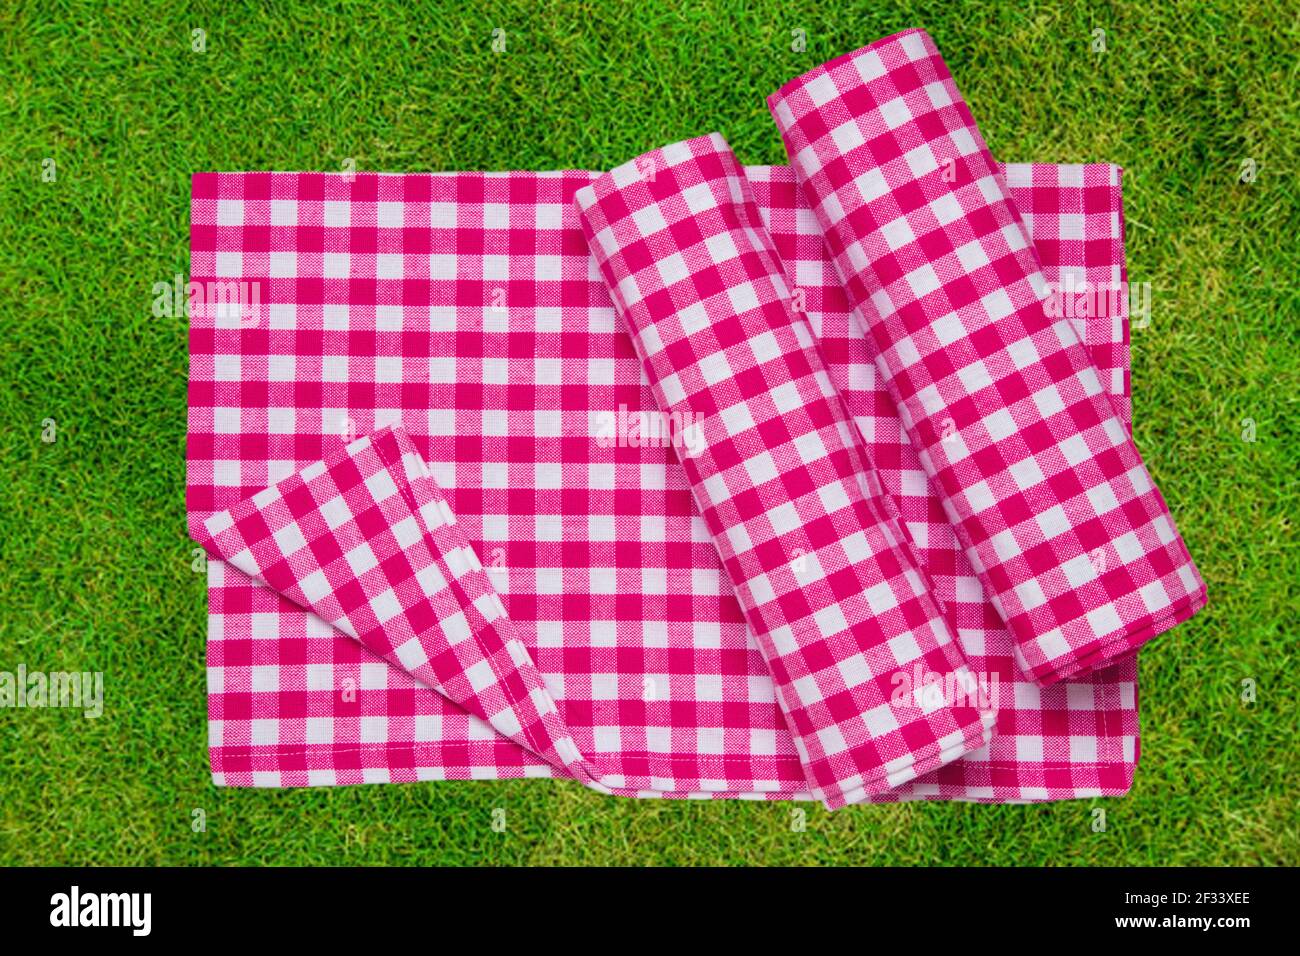 Manta de picnic roja. Tela de picnic a cuadros rojos sobre hierba  exuberante borrosa inundada por el sol con enfoque en servilleta. Hermoso  telón de fondo para la colocación de su producto